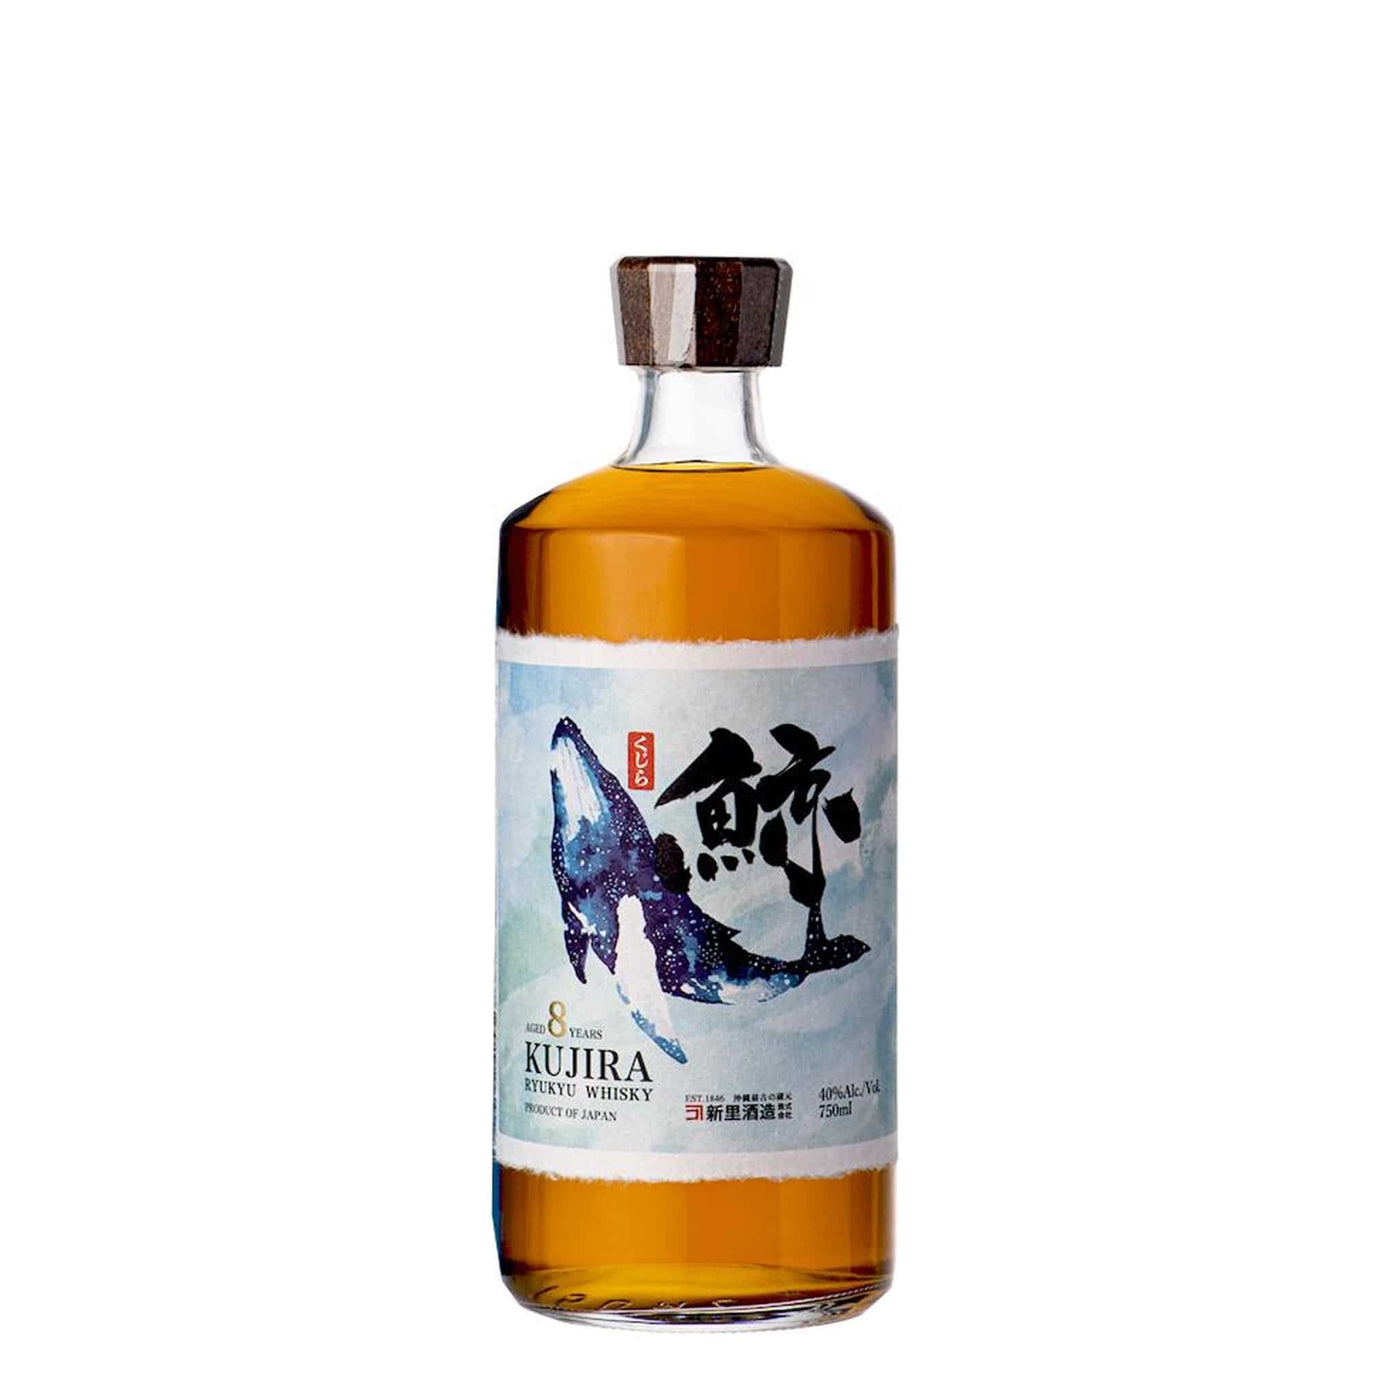 Kujira 8 Years Ryukyu Whisky - Spiritly